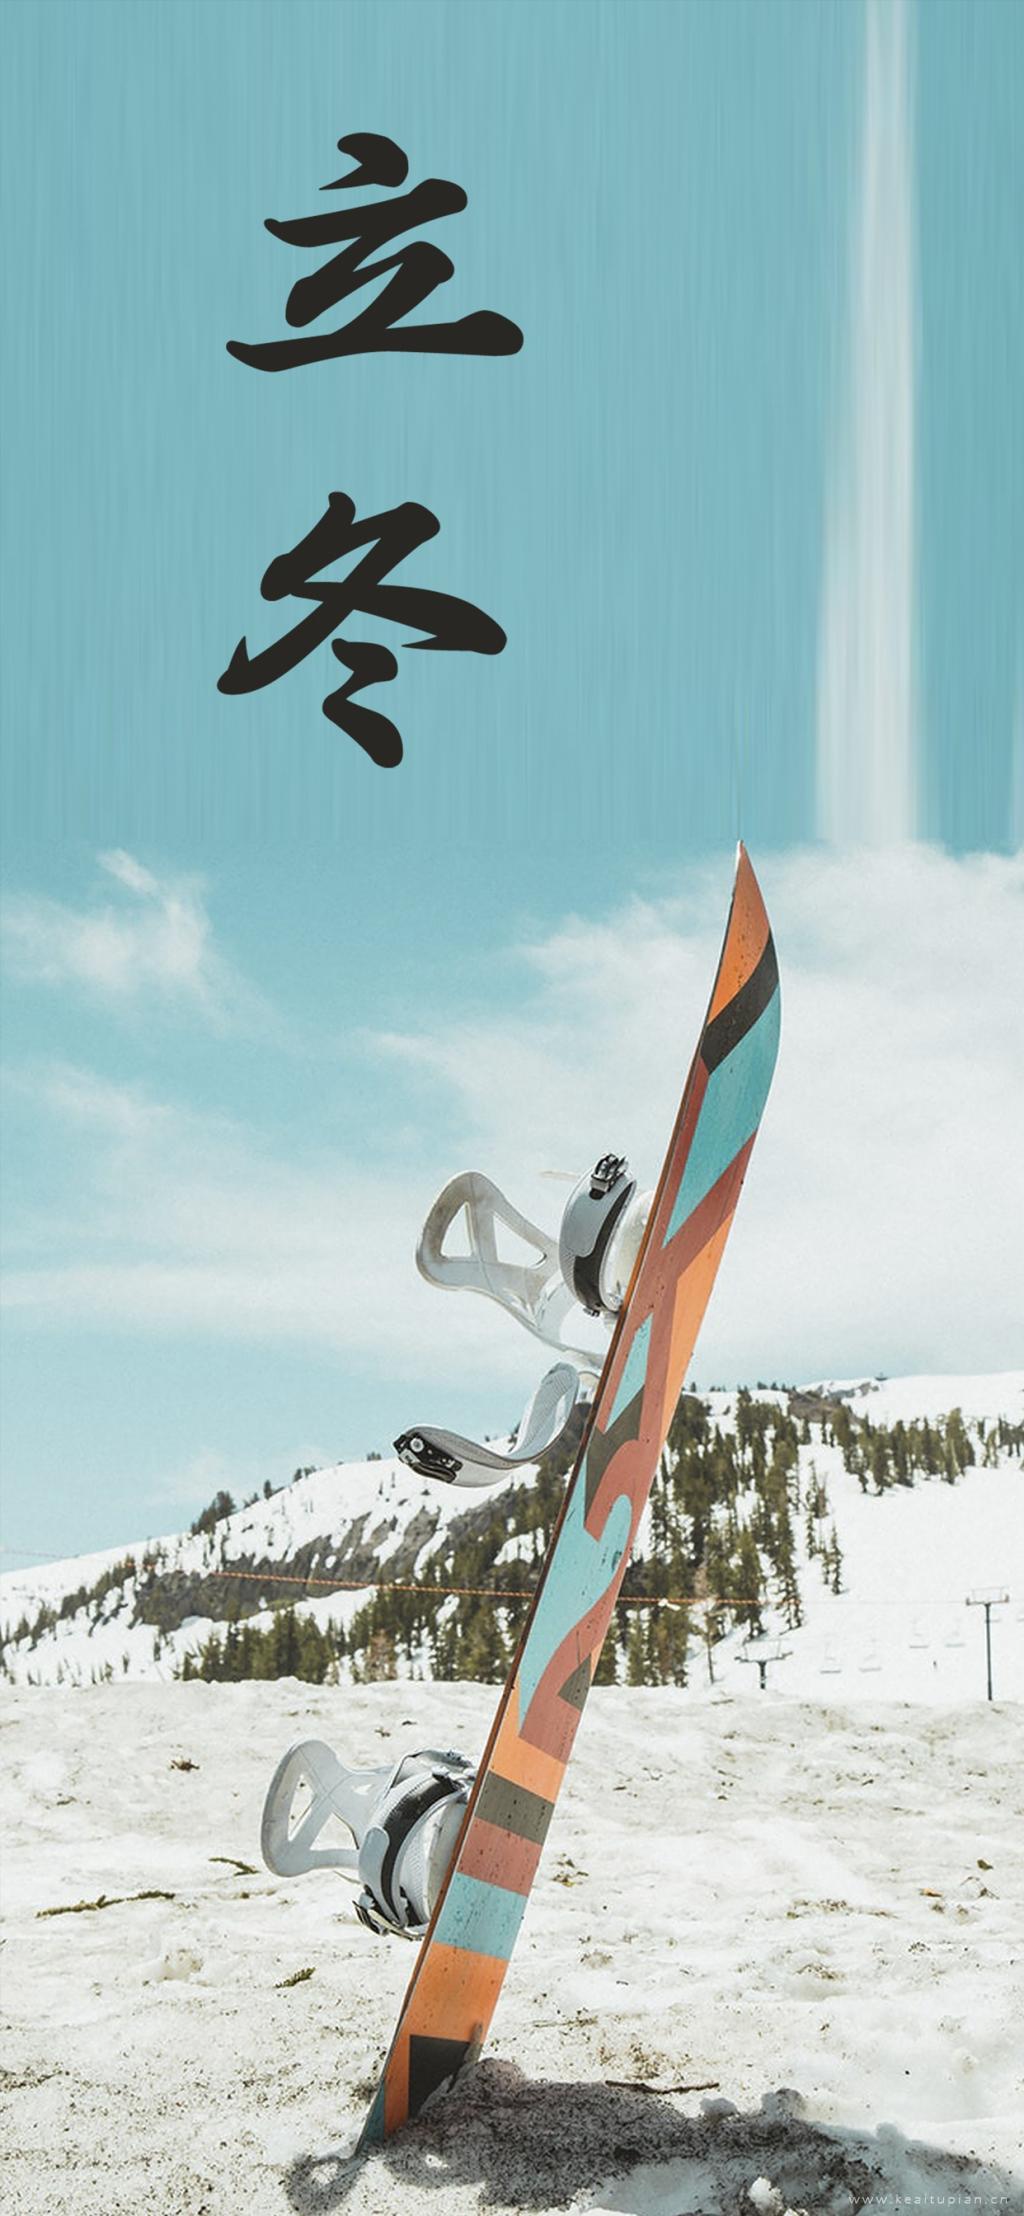 岁月匆匆,转眼又立冬最新雪山滑雪板图片